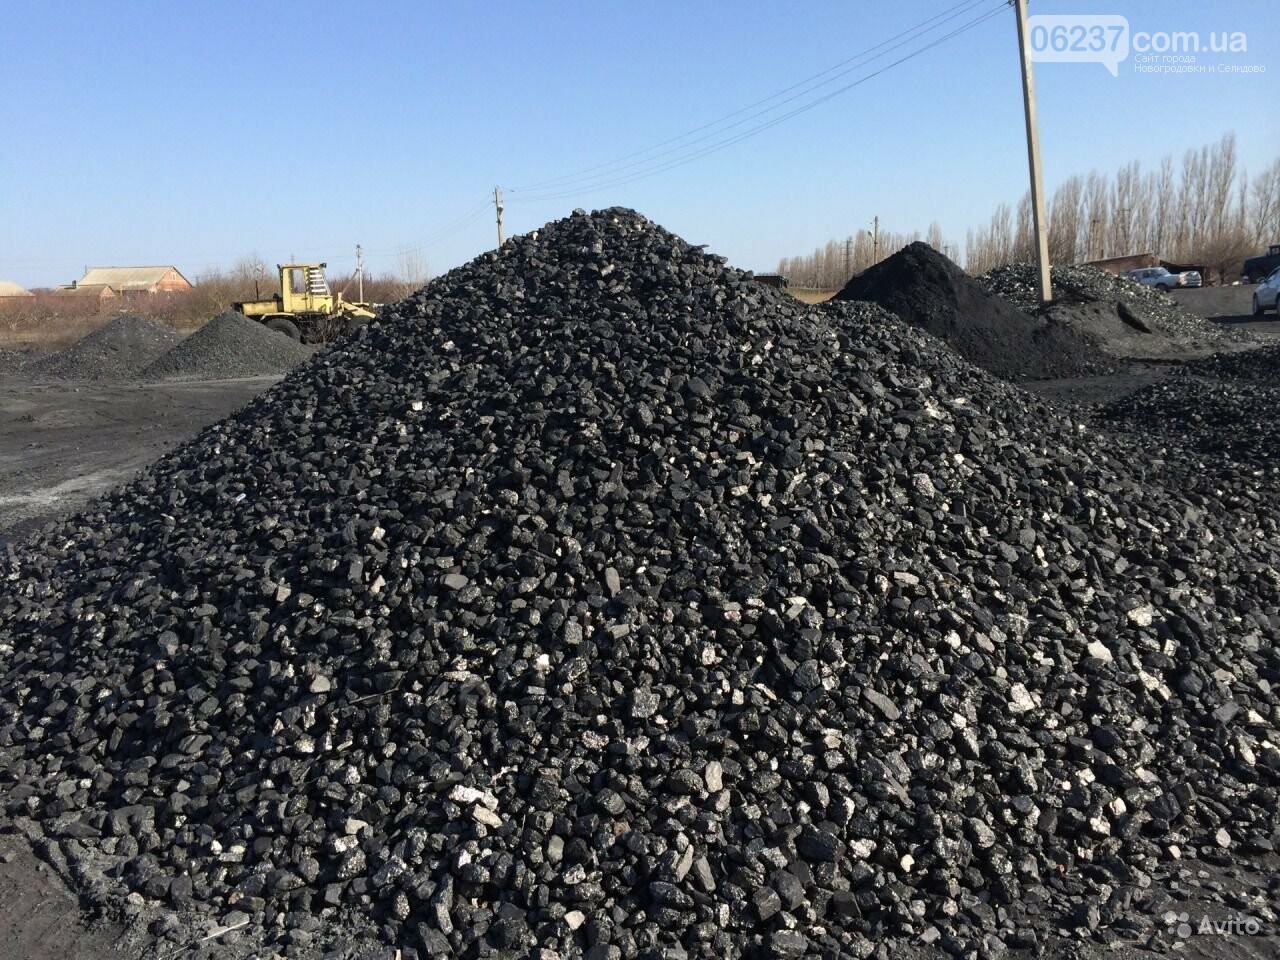 Недалеко от шахты «Кураховская» незаконно добывали уголь в промышленных масштабах, фото-1